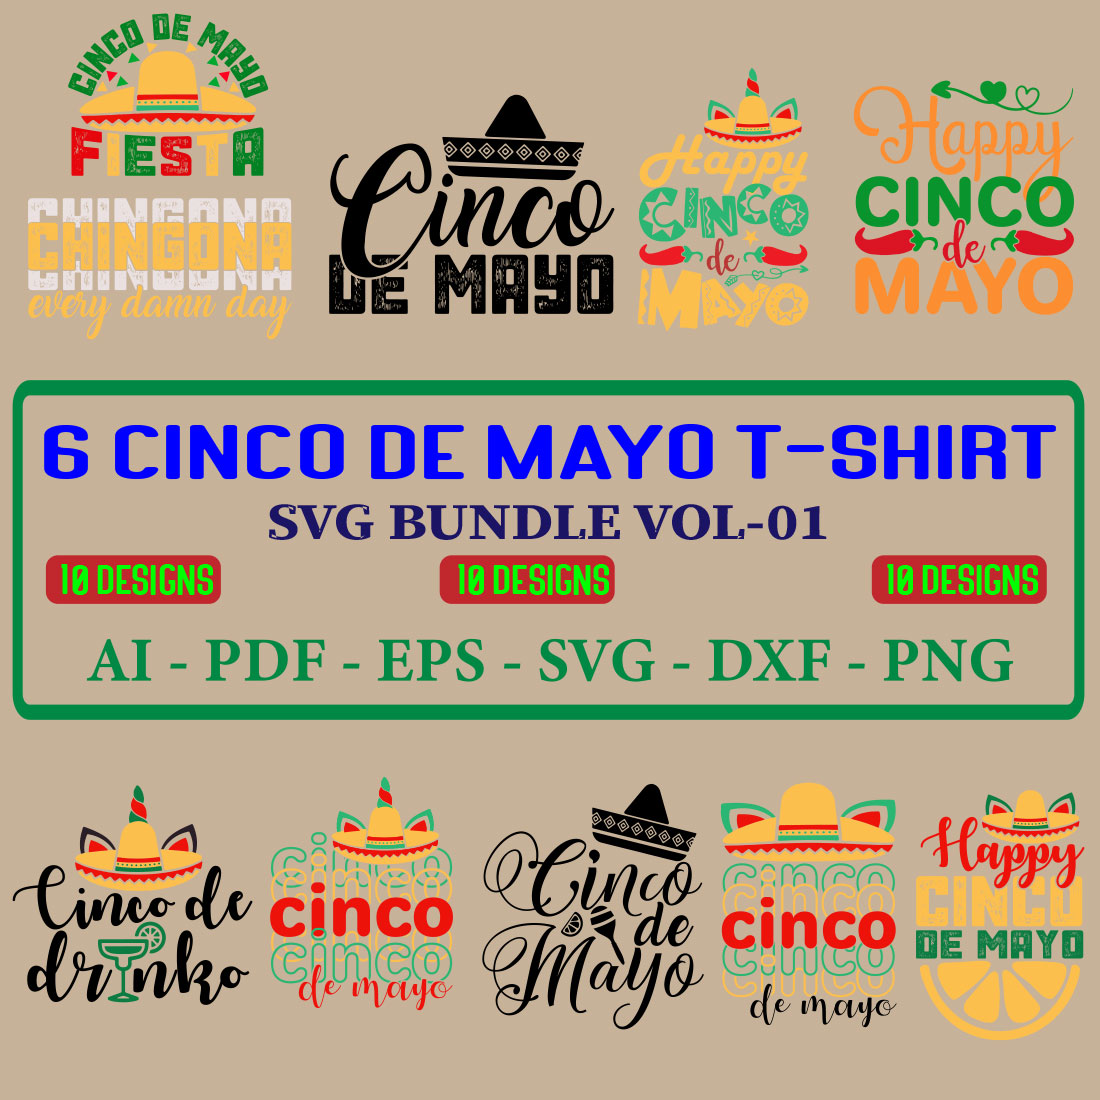 10 Cinco De Mayo T-shirt SVG Bundle Vol-01 cover image.